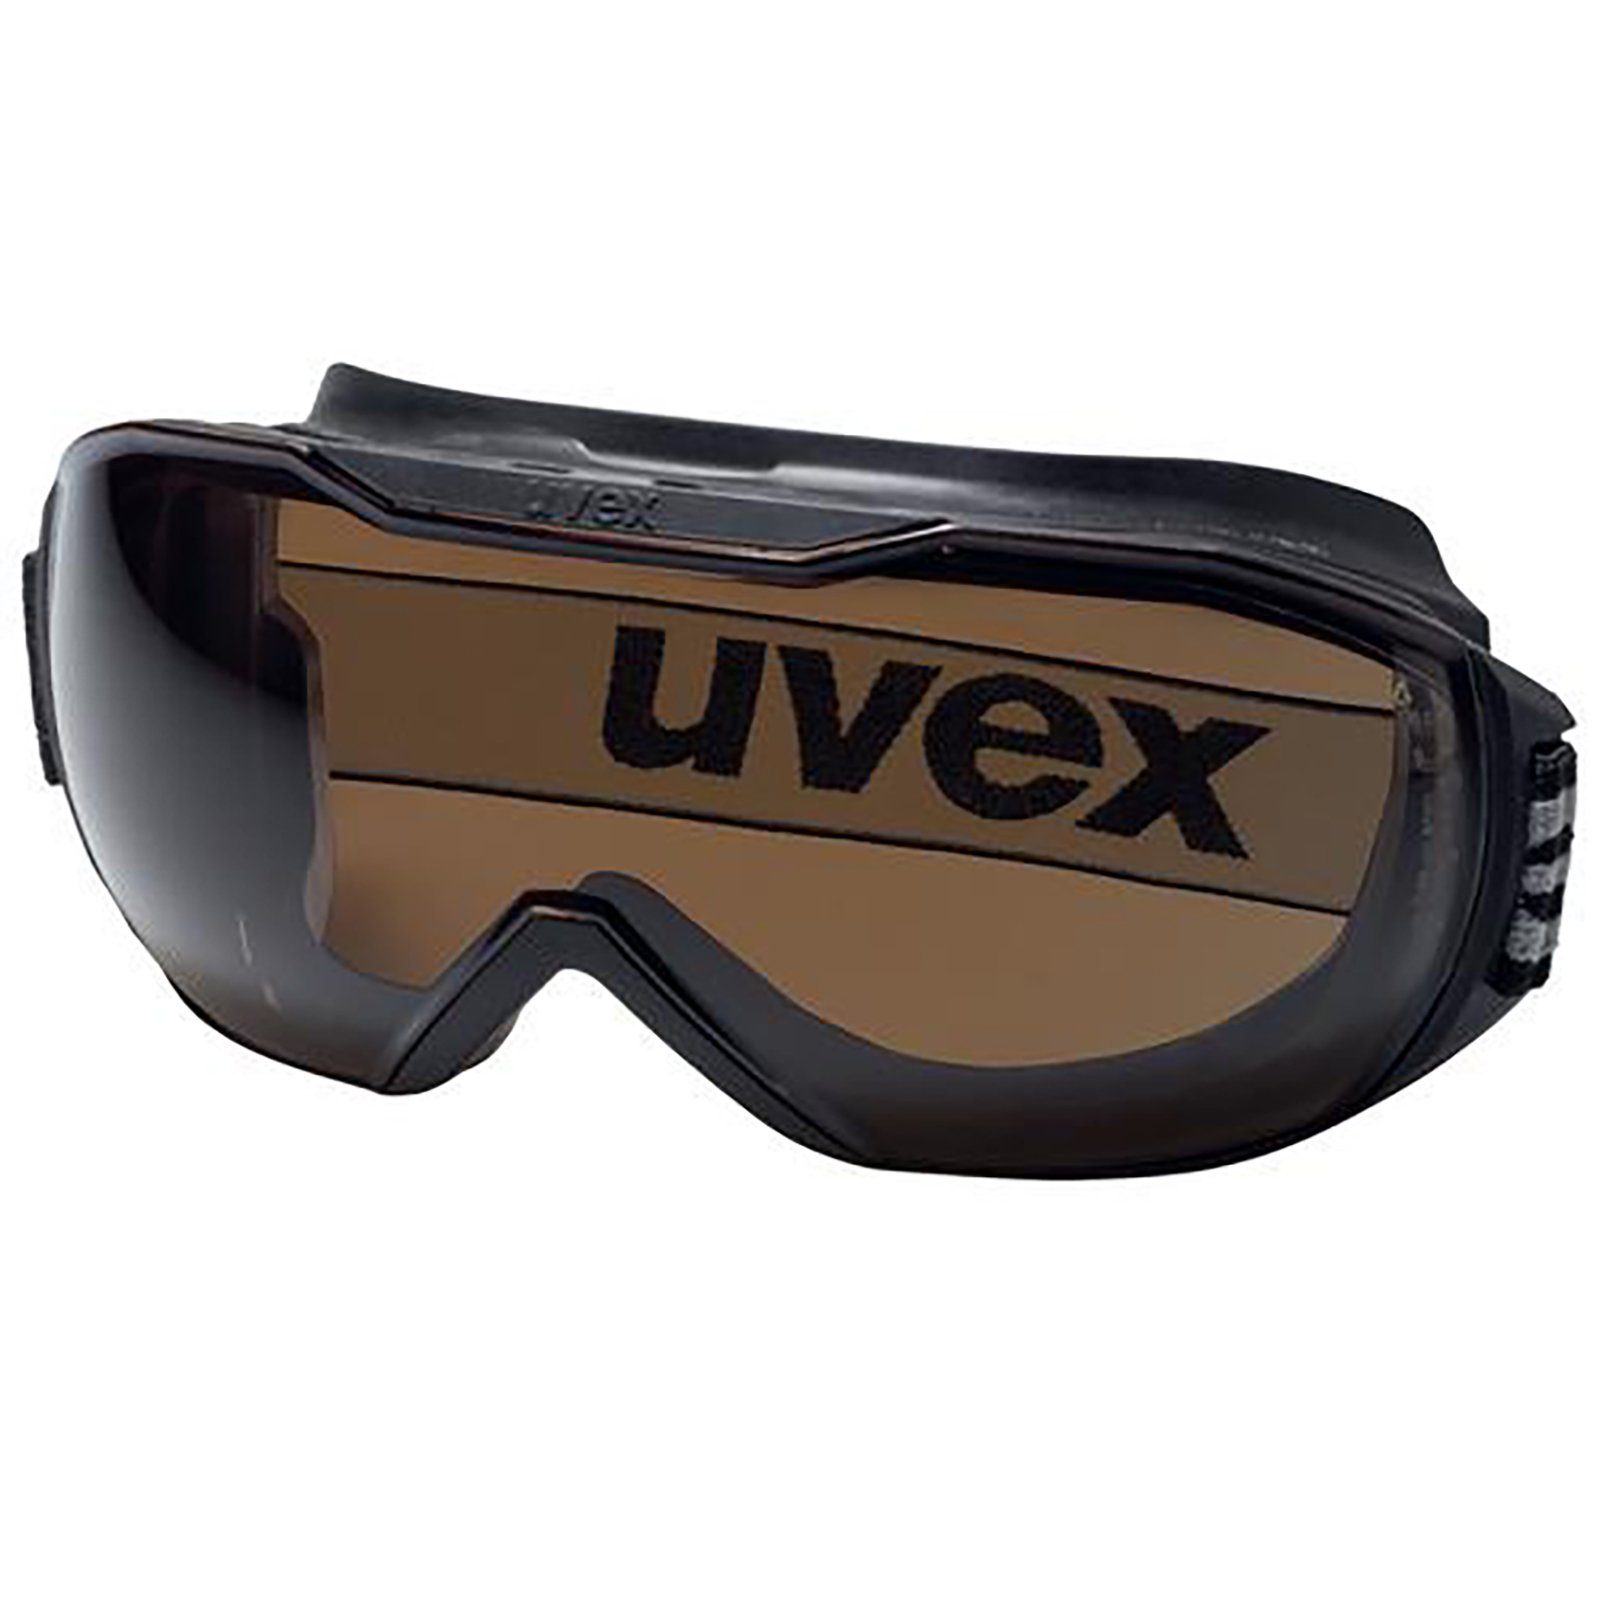 Uvex Arbeitsschutzbrille Vollsichtbrille megasonic 9320223 CBR23 exc. sv